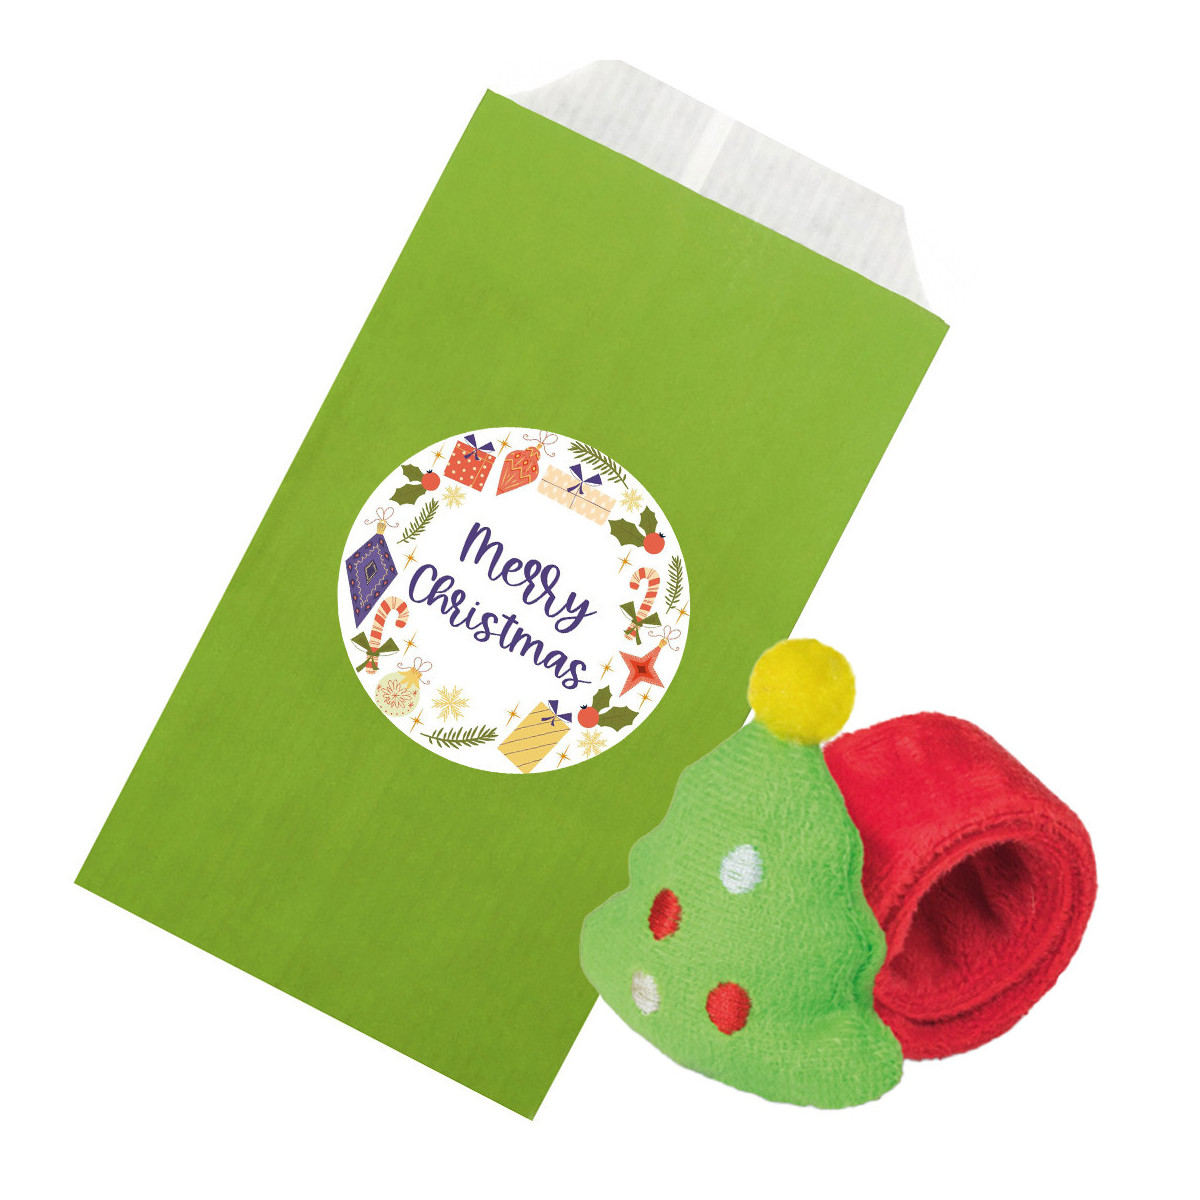 Bracciale arrotolabile natalizio con ornamento per albero di natale in busta di carta regalo con adesivo per personalizzare